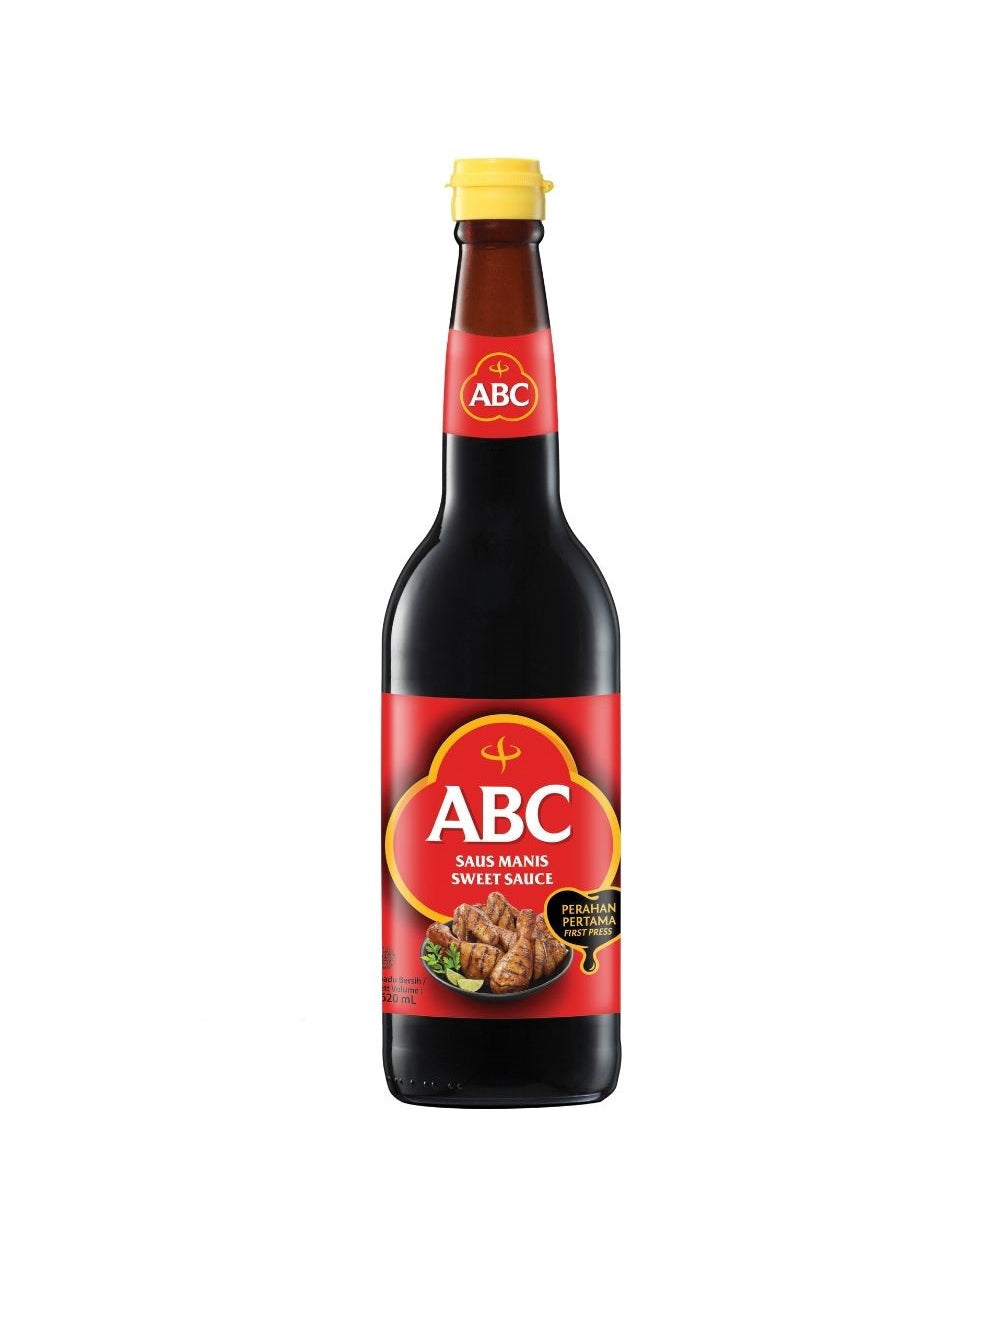 ABC Sweet Sauce 晒油 620ml